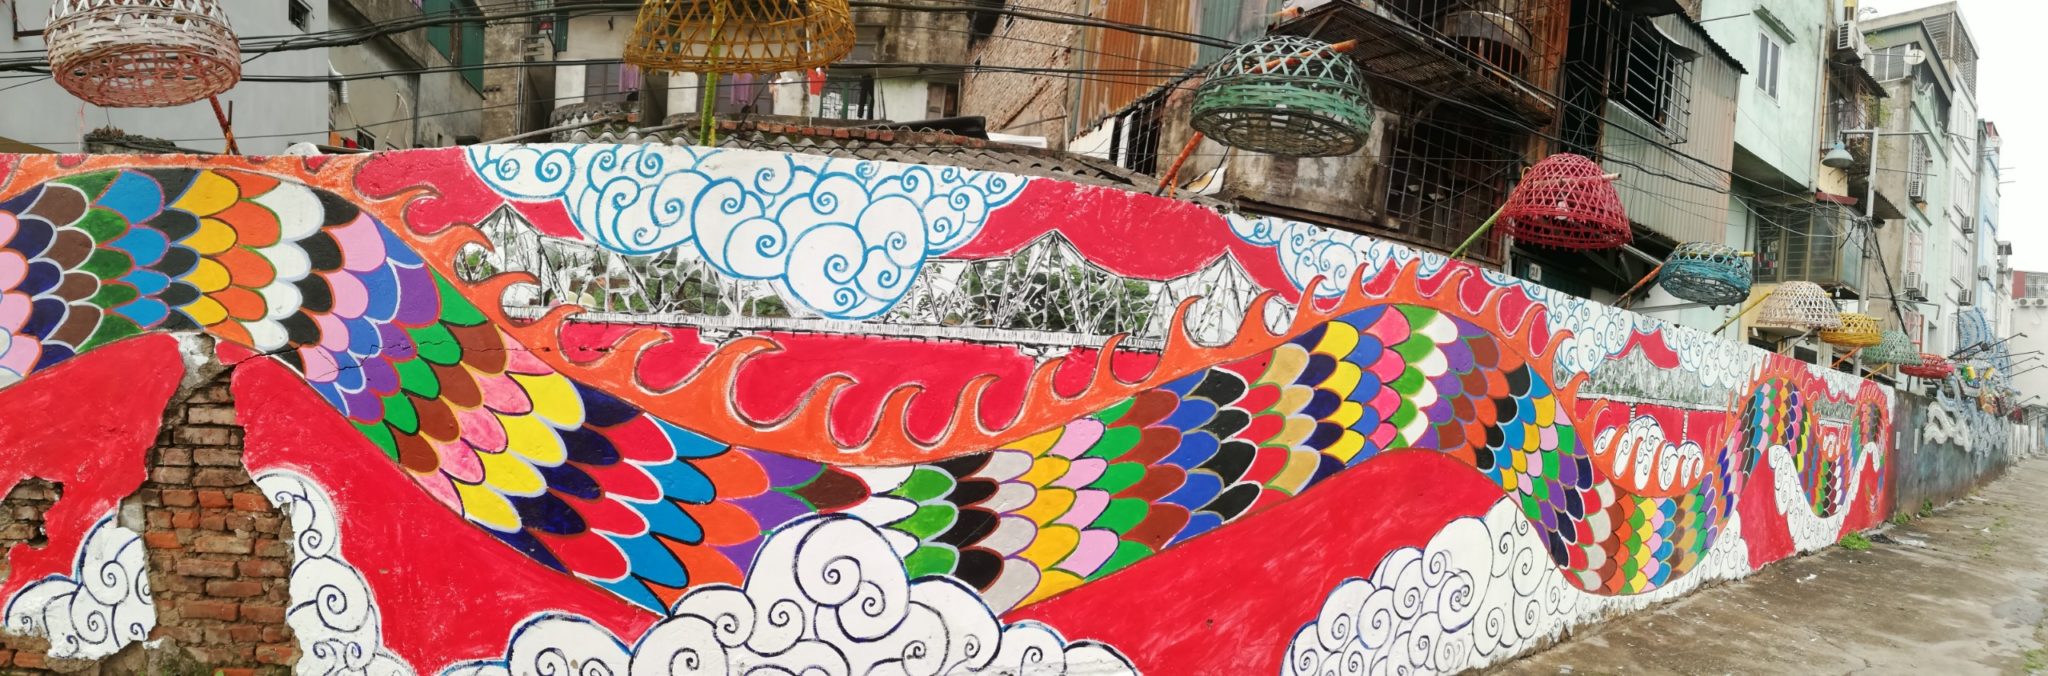 Con đường đầy rác dưới chân cầu Long Biên bỗng hóa thành tác phẩm nghệ thuật đầy màu sắc